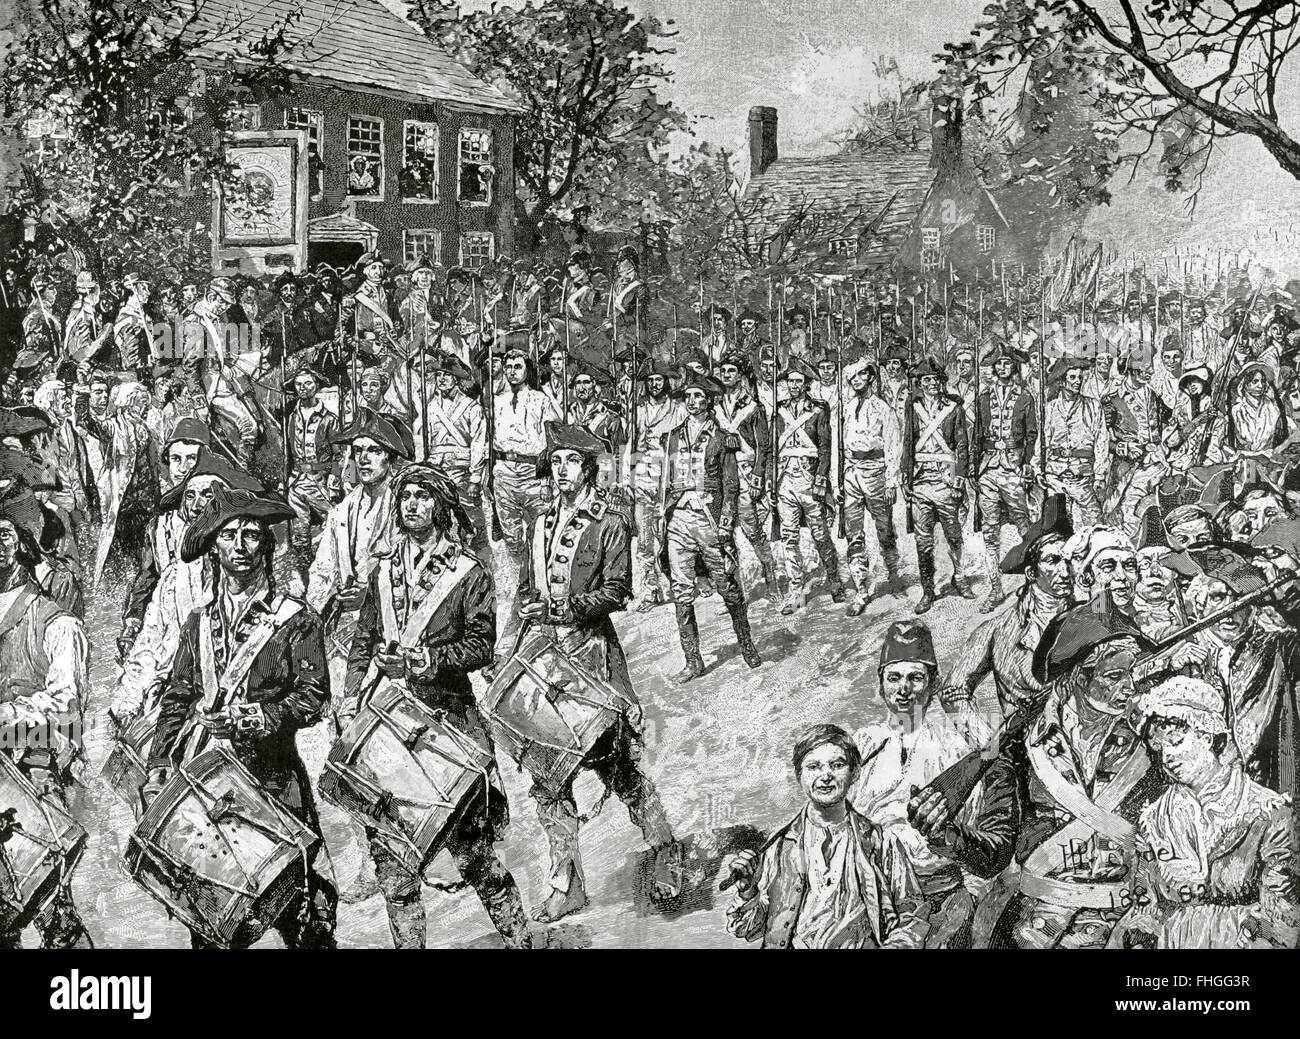 Amerikanischer Unabhängigkeitskrieg (1775-1783). Das Ende des Krieges. Die nordamerikanischen Aufständischen Armee marschiert in Richtung New York. Kupferstich von Howard Pyle. des 19. Jahrhunderts. Stockfoto